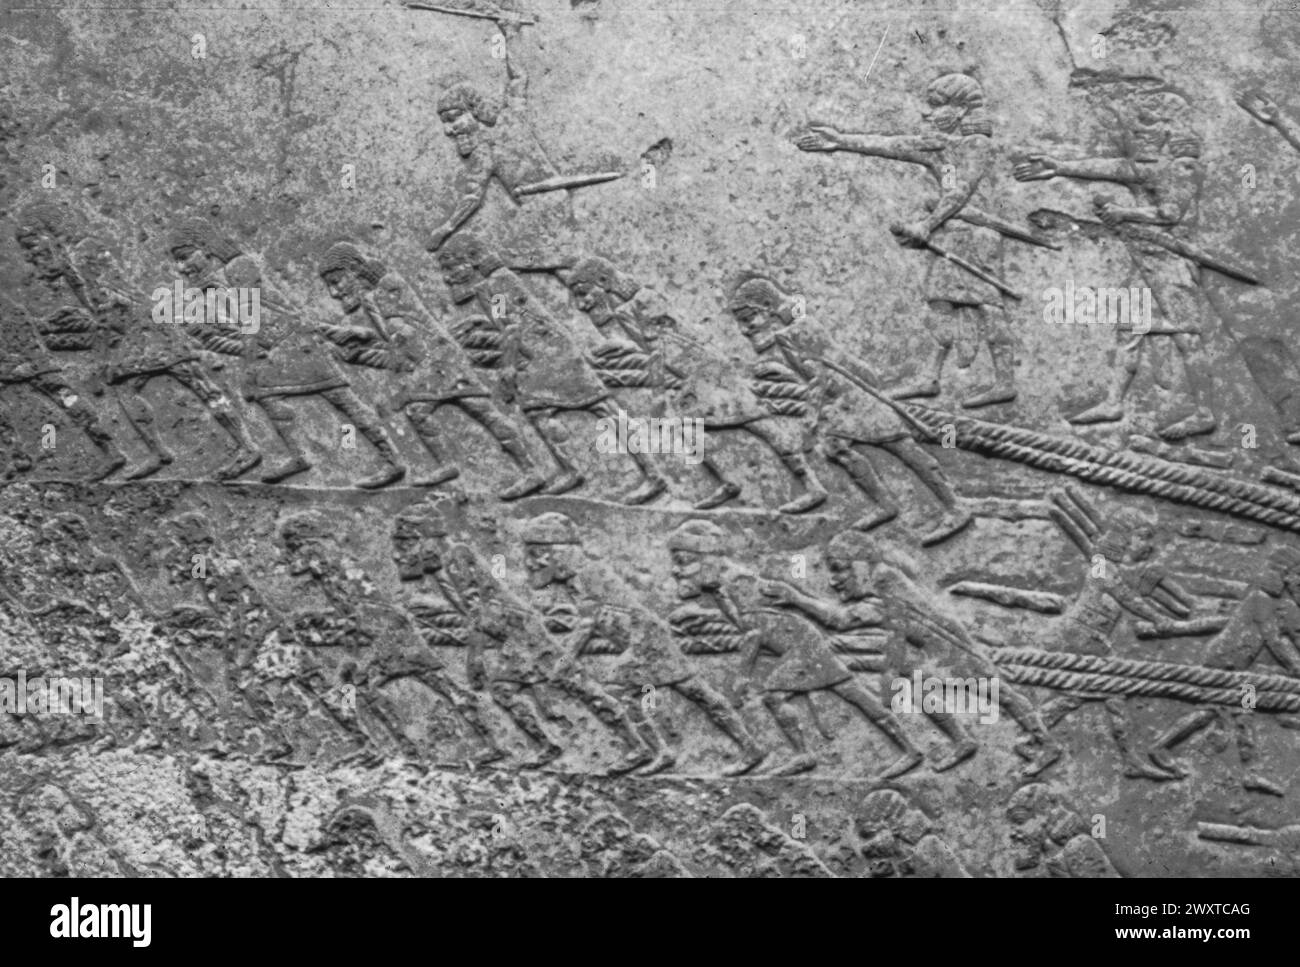 Sklavenbanden schleppen eine Stiersphinx für den Bau des Palastes, des Basreliefs, des Sanherib-Palastes, Ninive, Mesopotamien Stockfoto